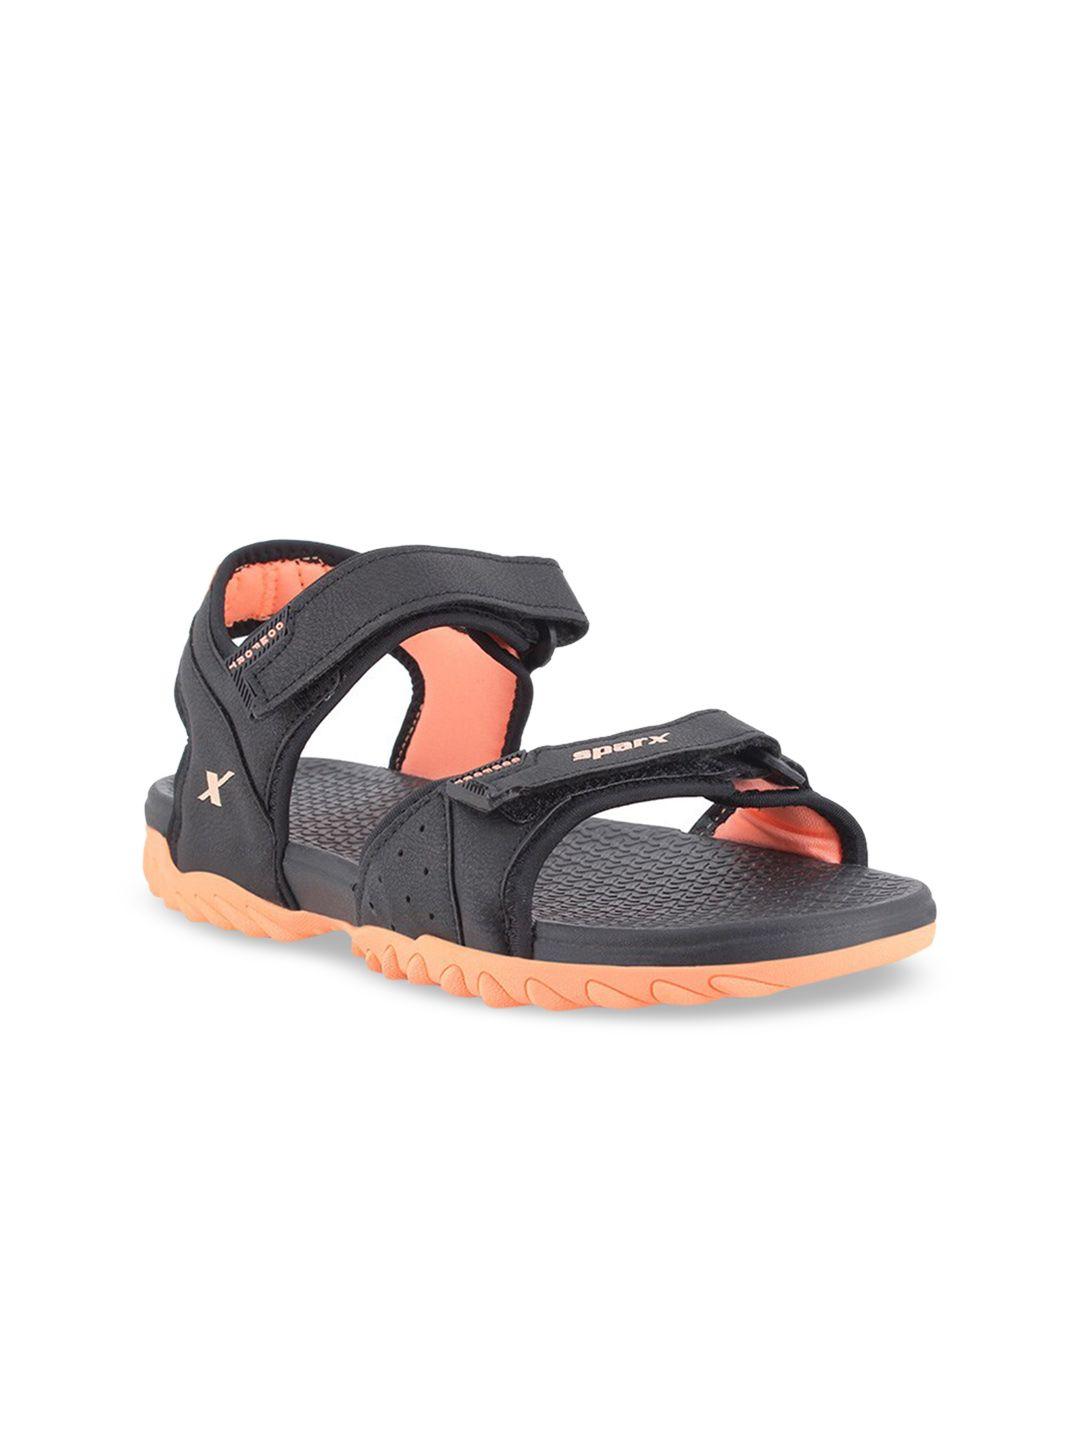 sparx women black & orange sports sandals